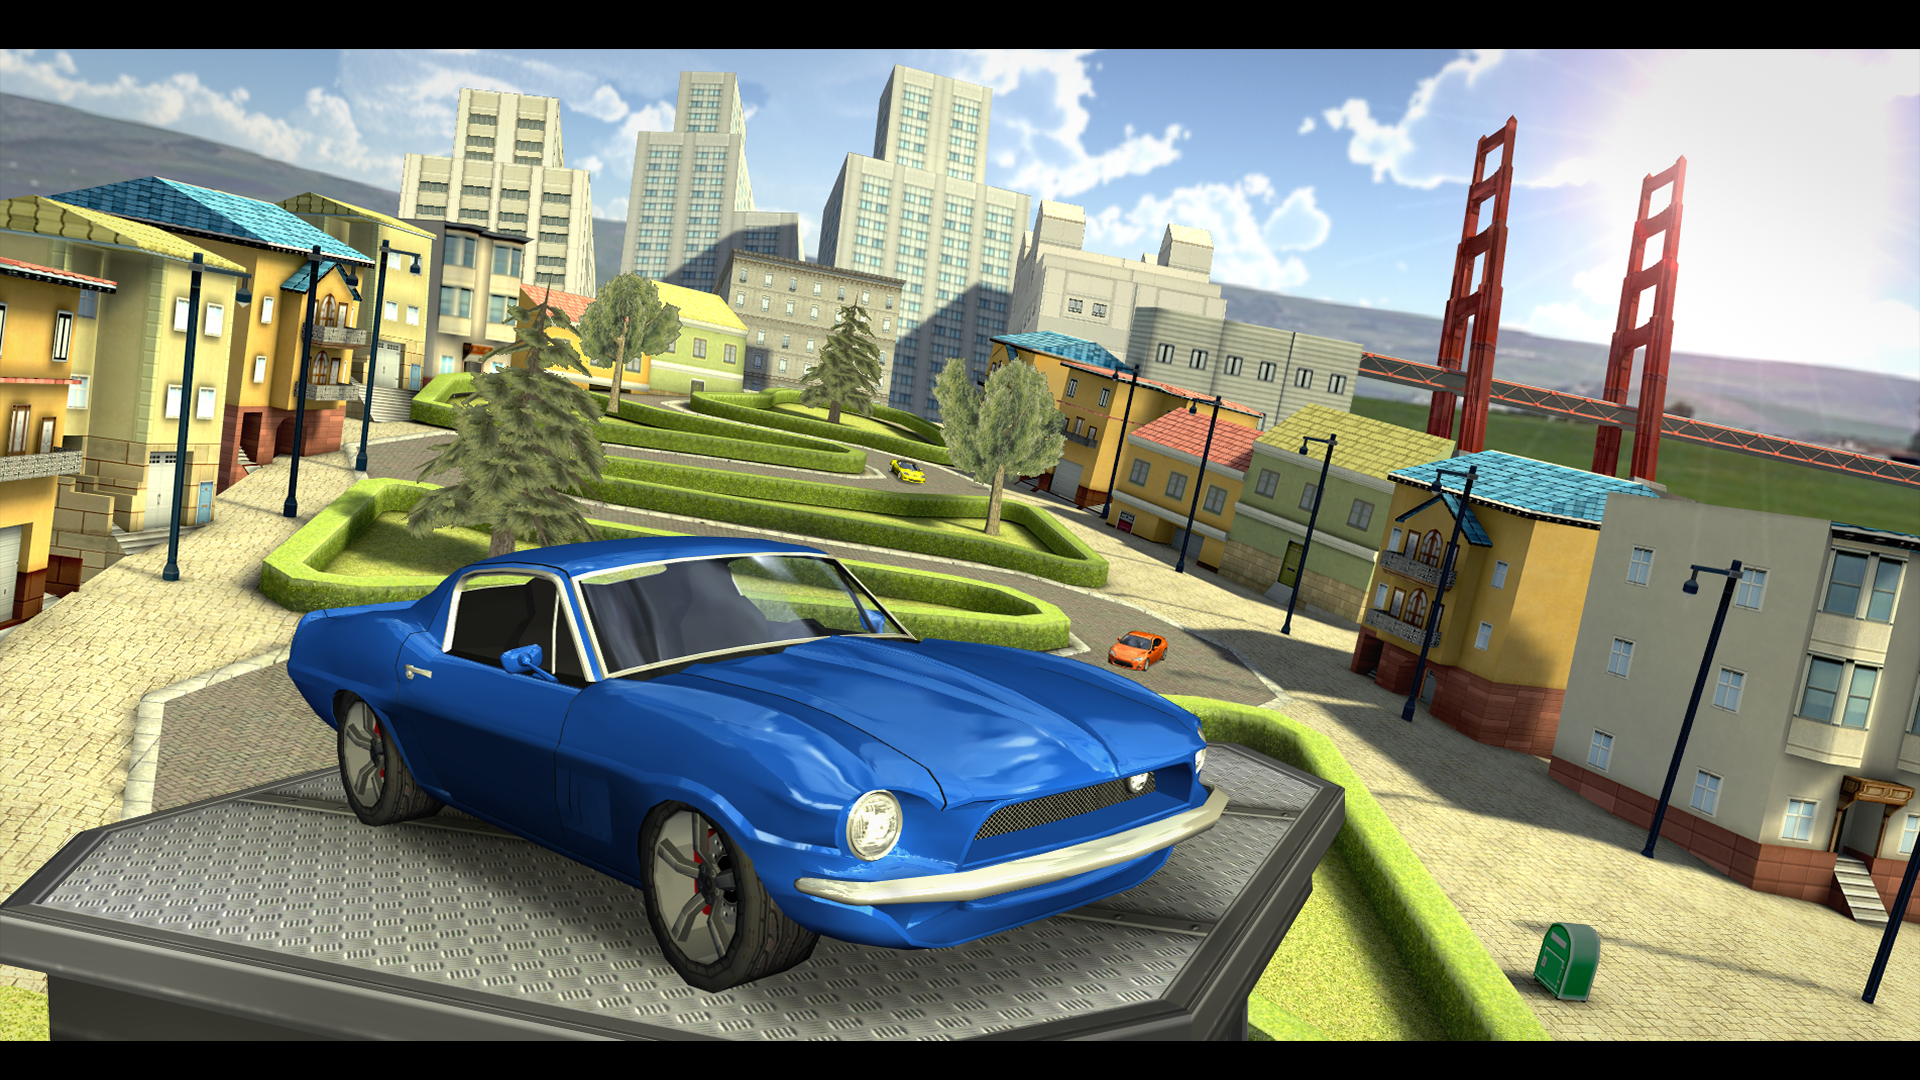 Screenshot 1 of Simulatore di guida automobilistica: SF 5.0.0